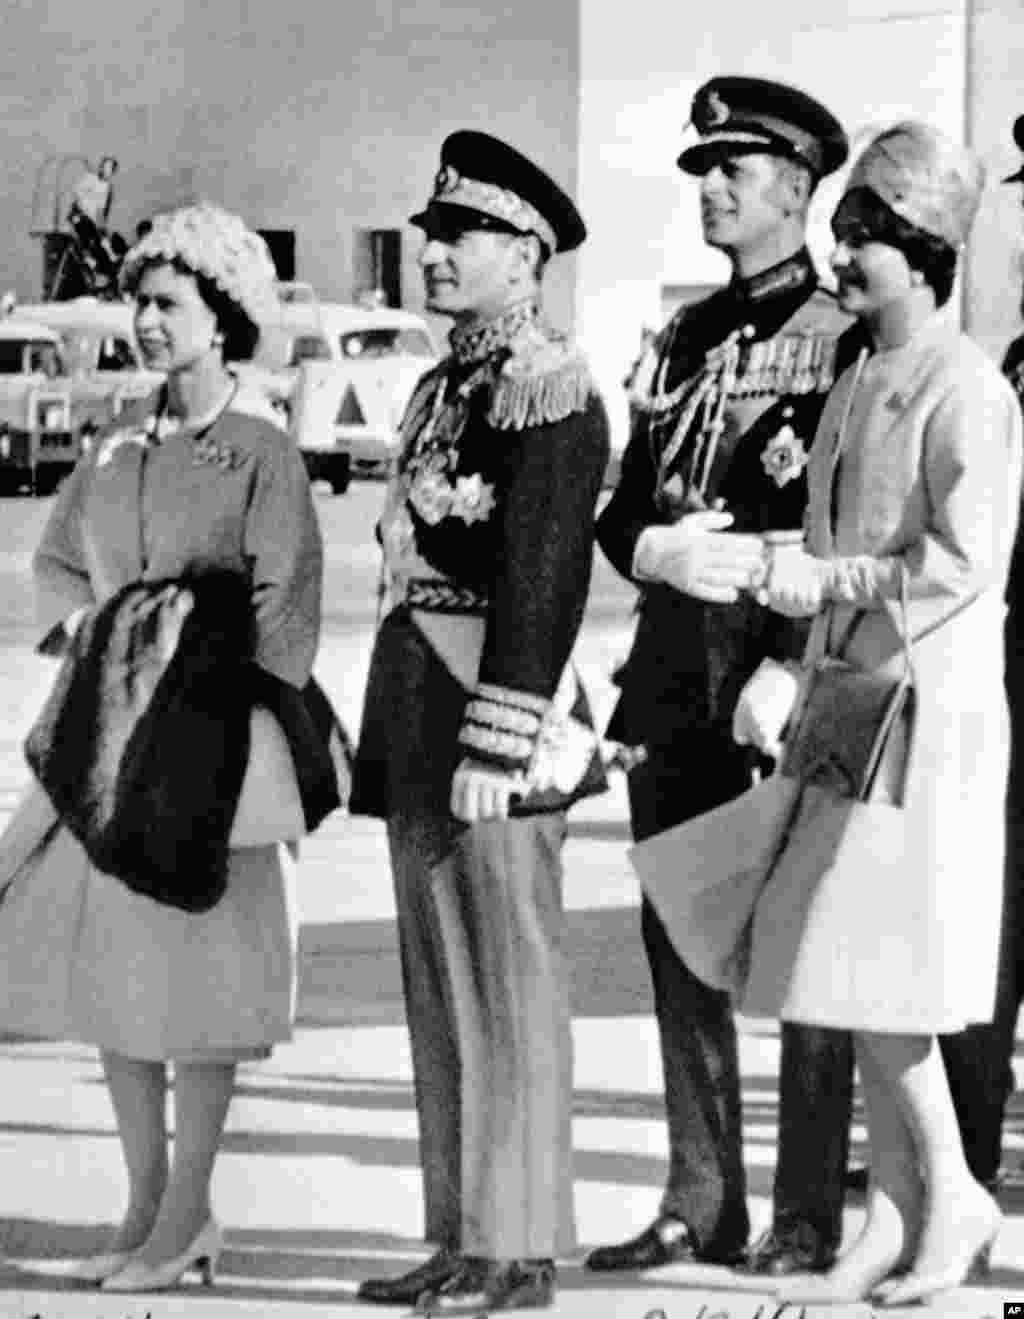 یک سال بعد در اسفند ۱۳۳۹، ملکه بریتانیا و همسرش به ایران سفر کردند. در این عکس آنها محمدرضا شاه و شهبانو فرح پهلوی در فرودگاه مهرآباد از آنها اسقبال کردند.